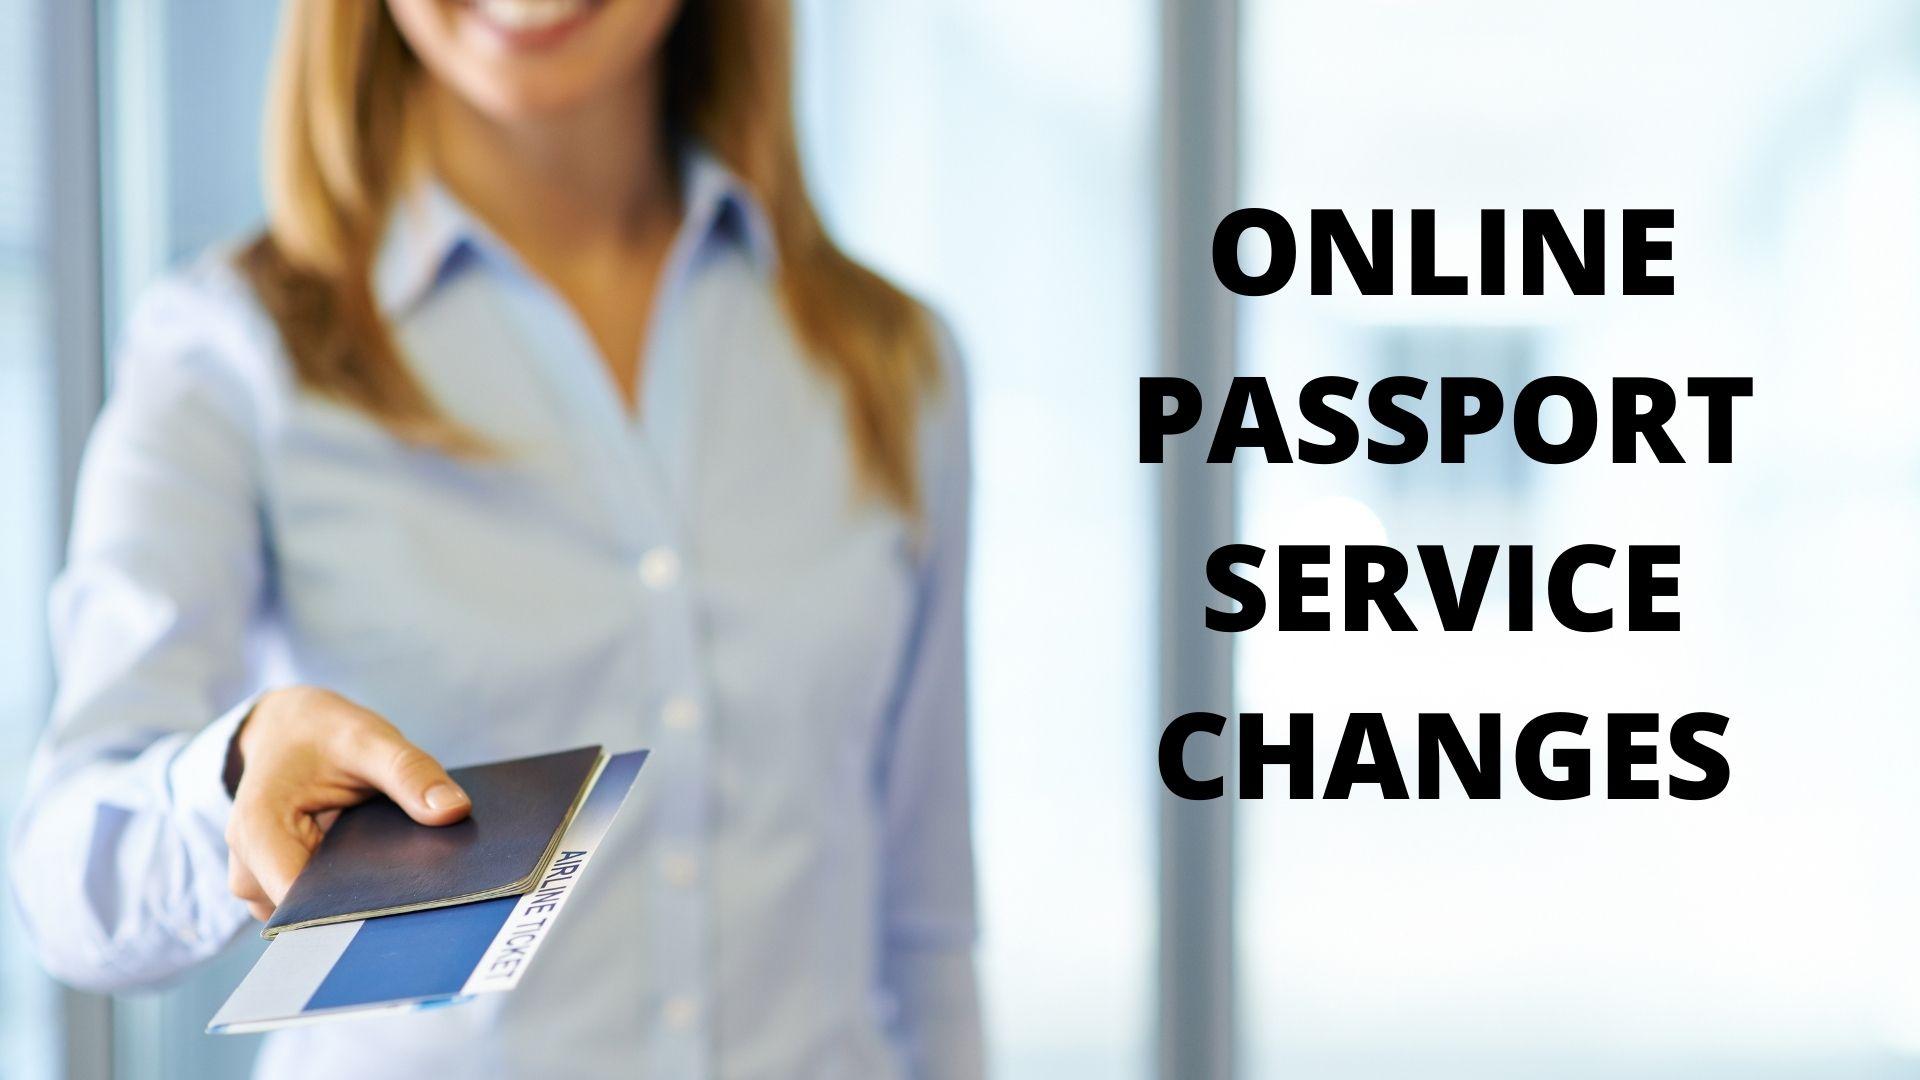 ONLINE PASSPORT SERVICE CHANGES